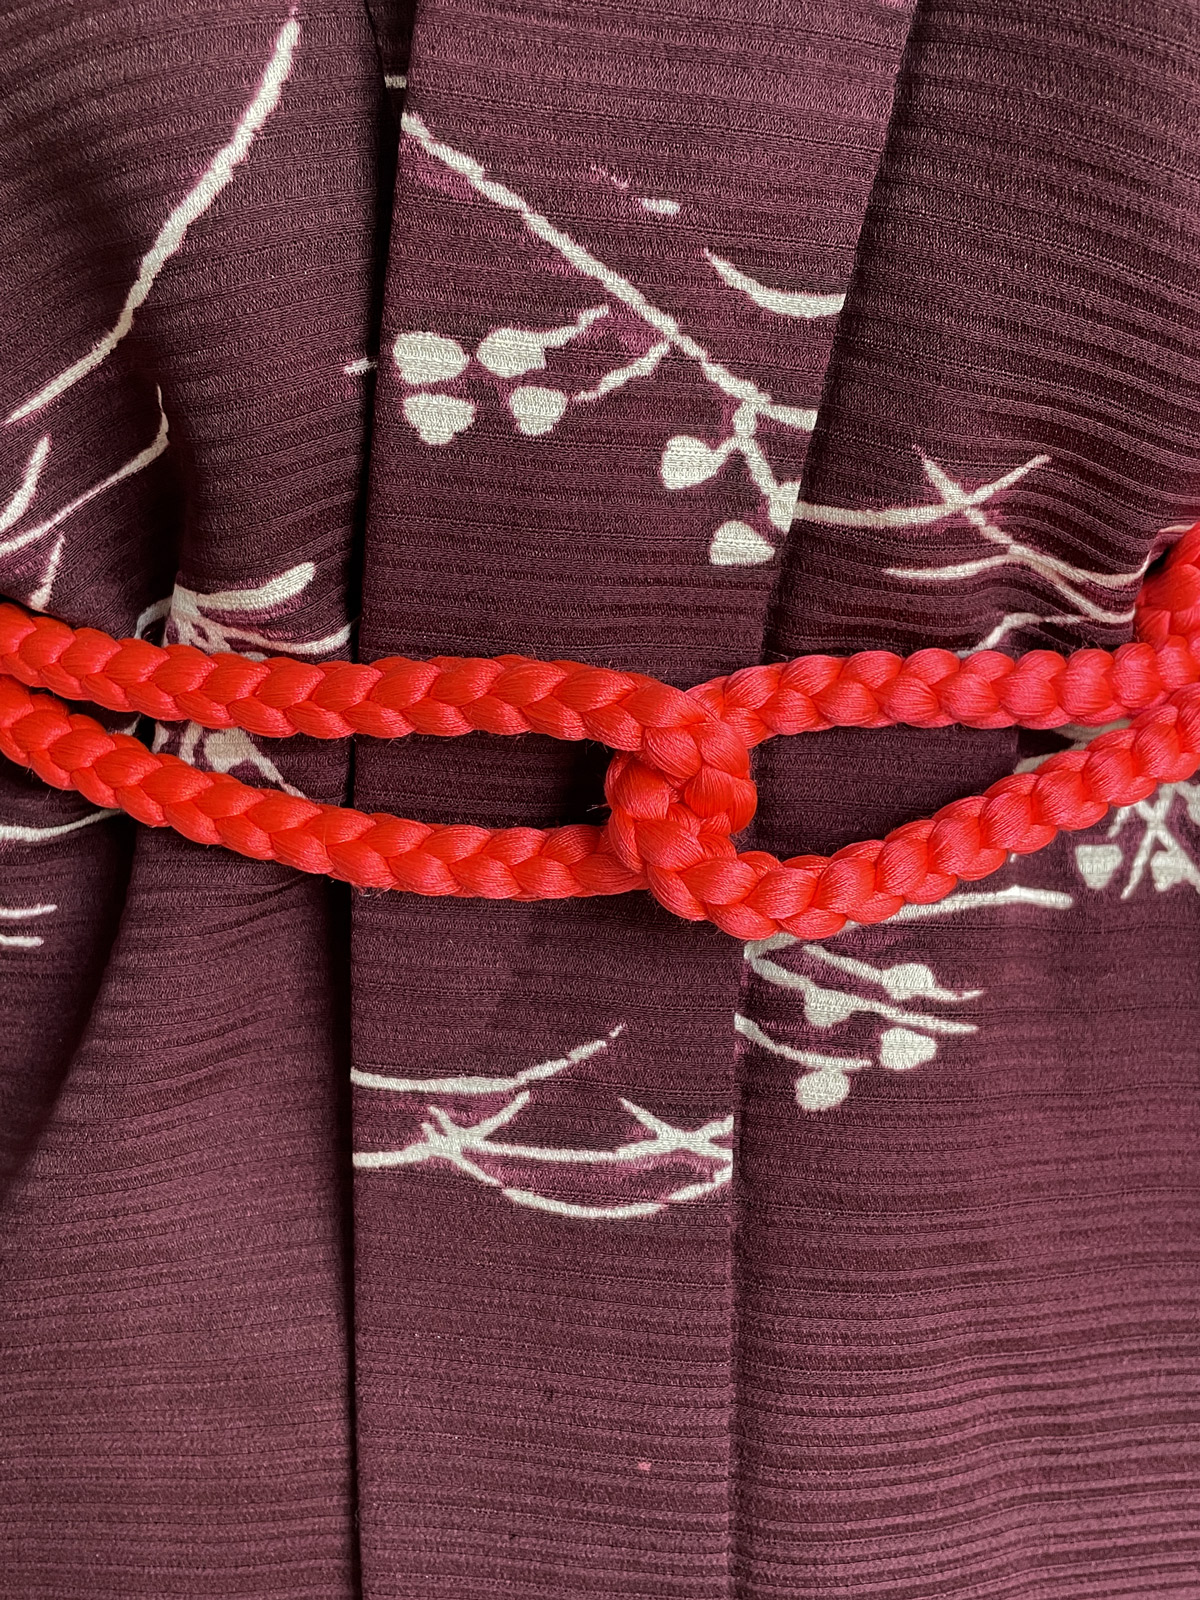 Silk cord in bright neon red color